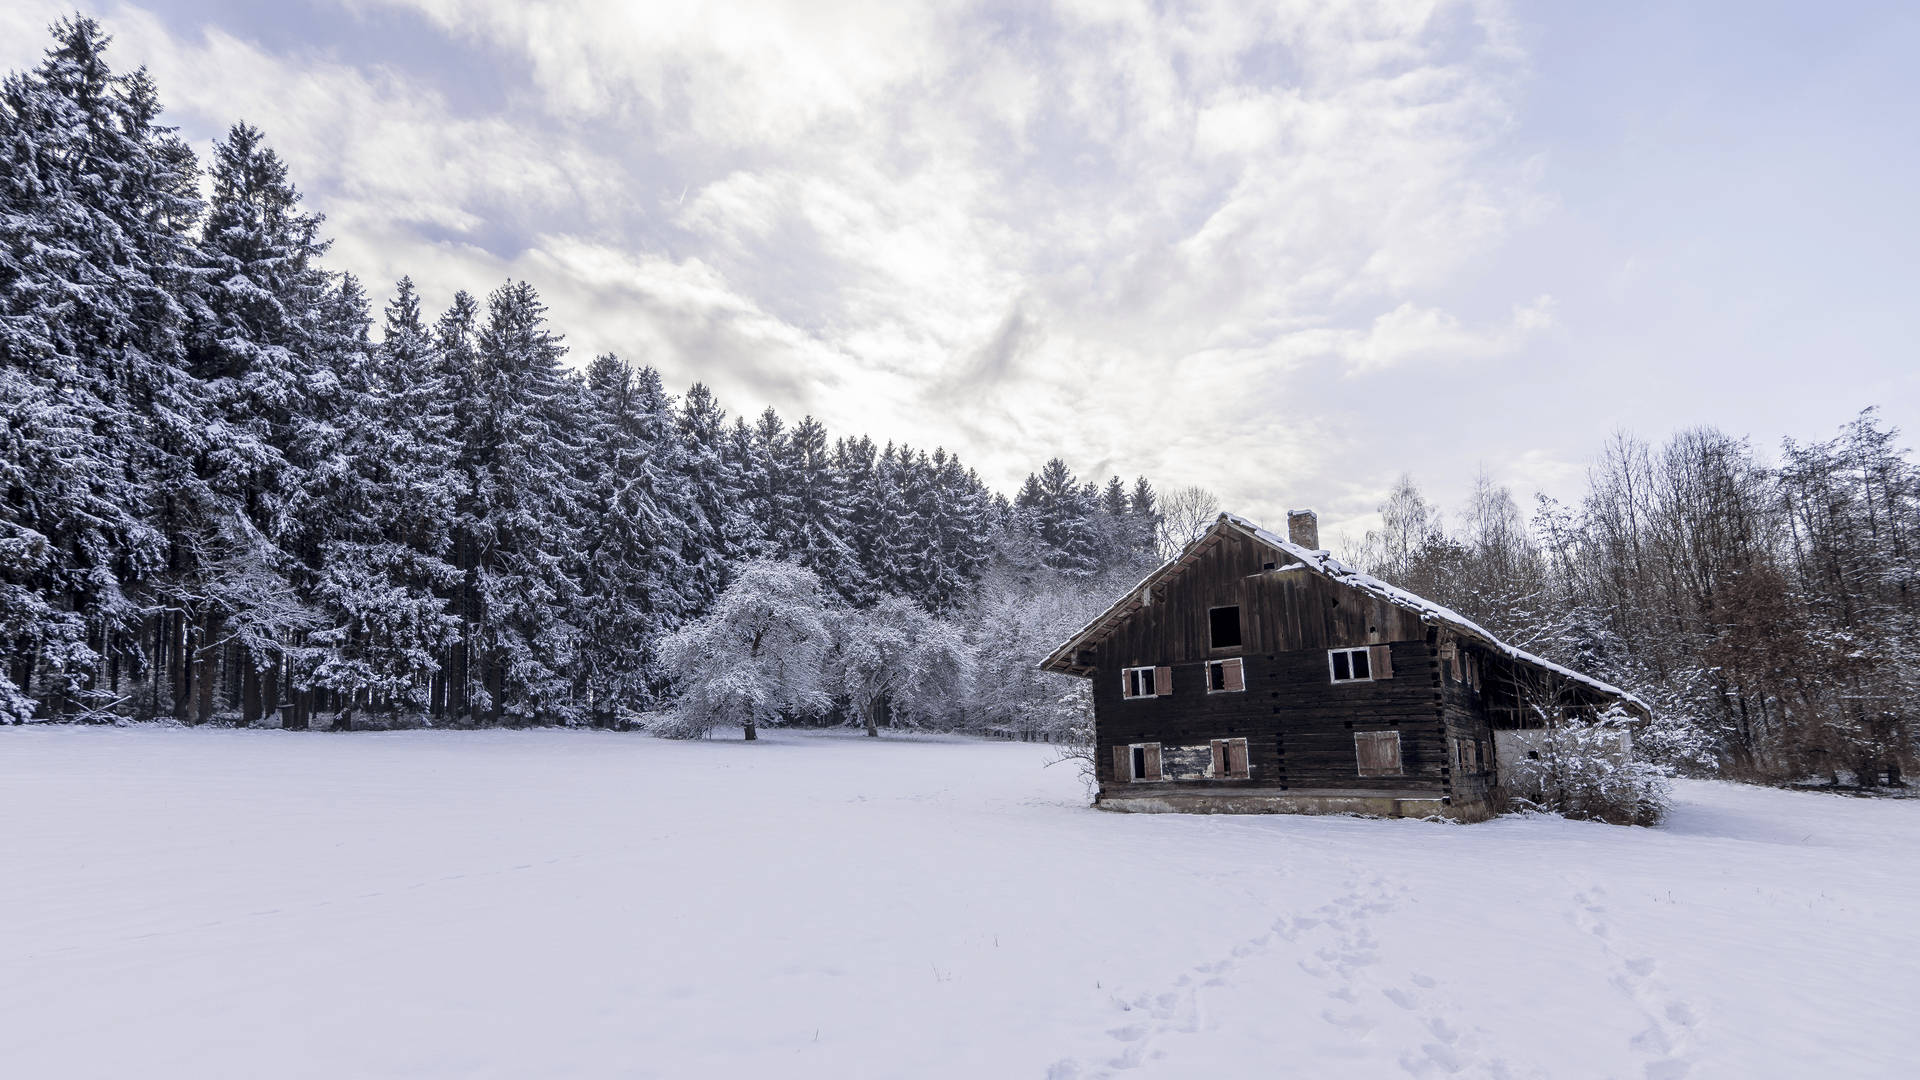 Magical winter wonderland awaits Wallpaper